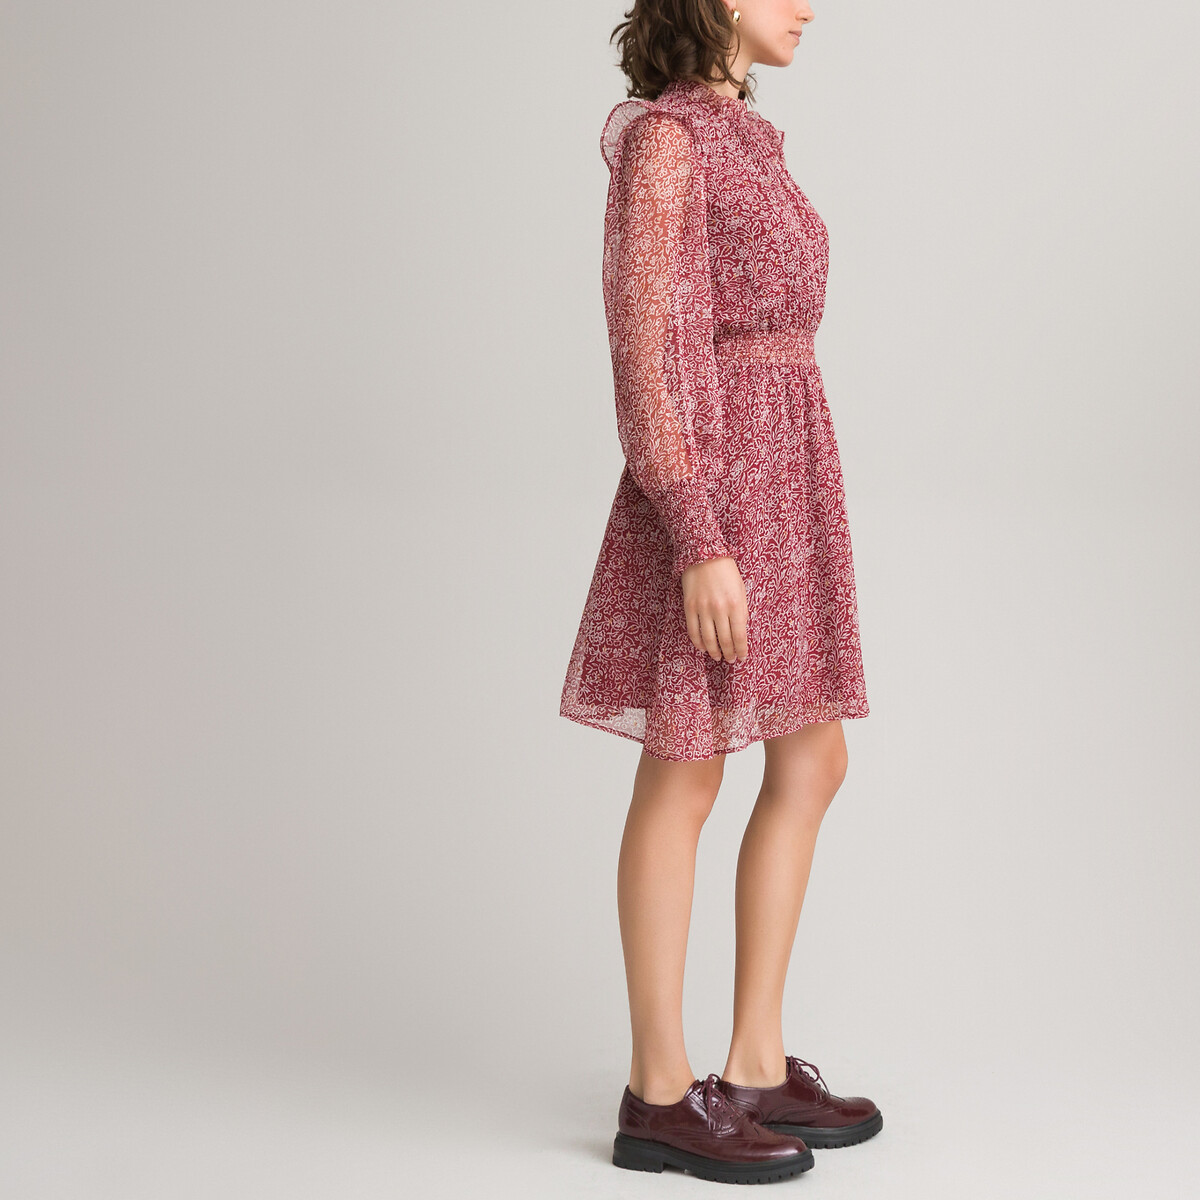 Платье LaRedoute С воротником-стойкой с воланом длинные рукава 48 красный, размер 48 - фото 2